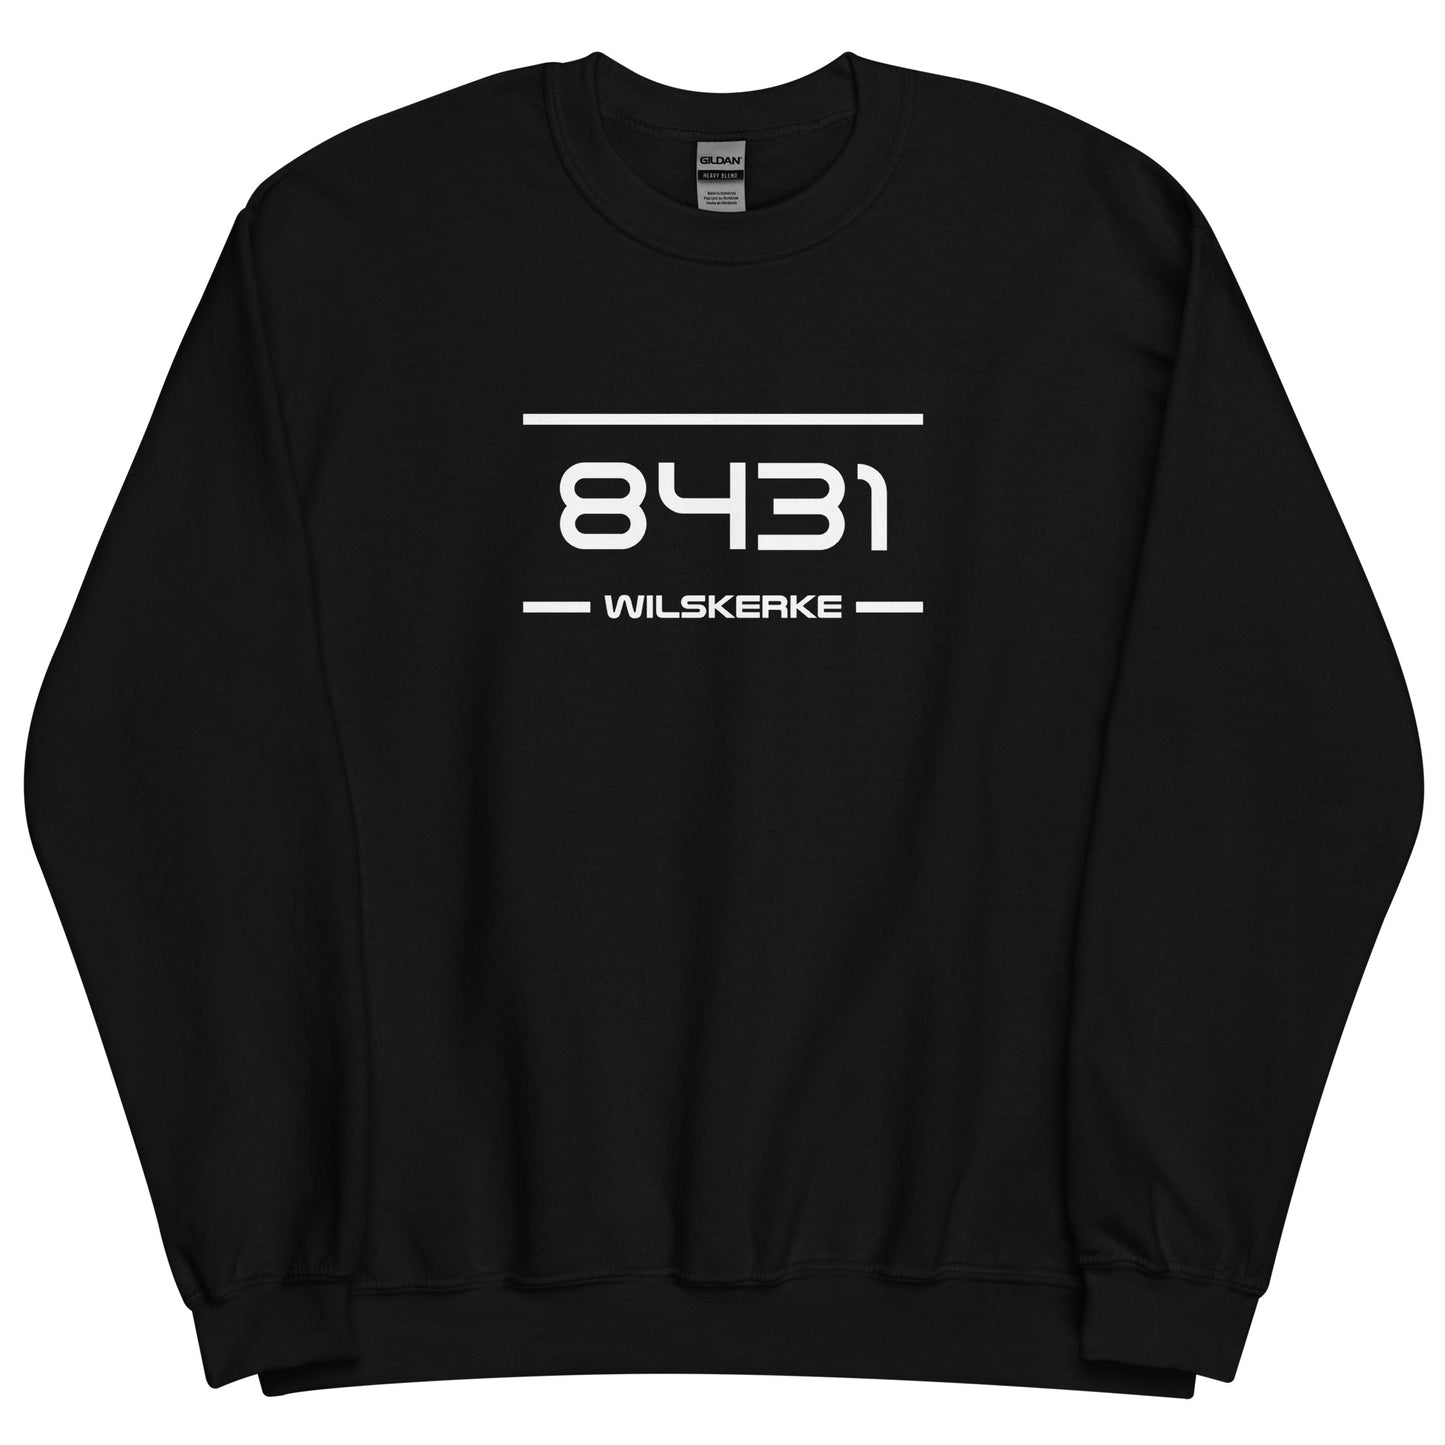 Sweater - 8431 - Wilskerke (M/V)